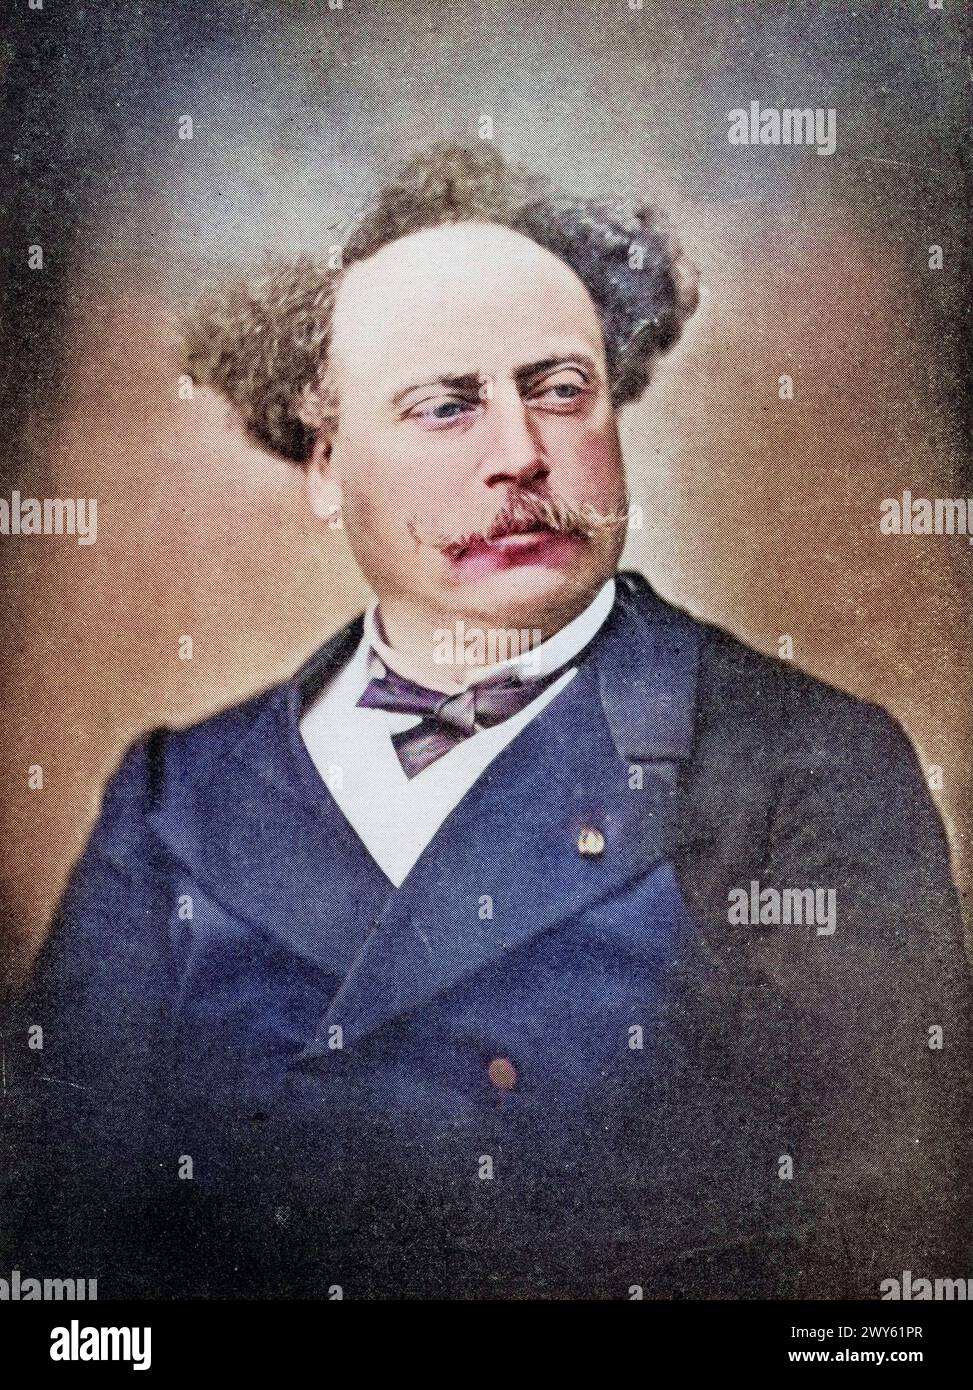 Alexandre Dumas der Jüngere, auch Dumas fils, geb. 27. Juli 1824 in Paris, gest. 27. November 1895 in Marly-le-Roi war ein französischer Romanschrifts Stock Photo